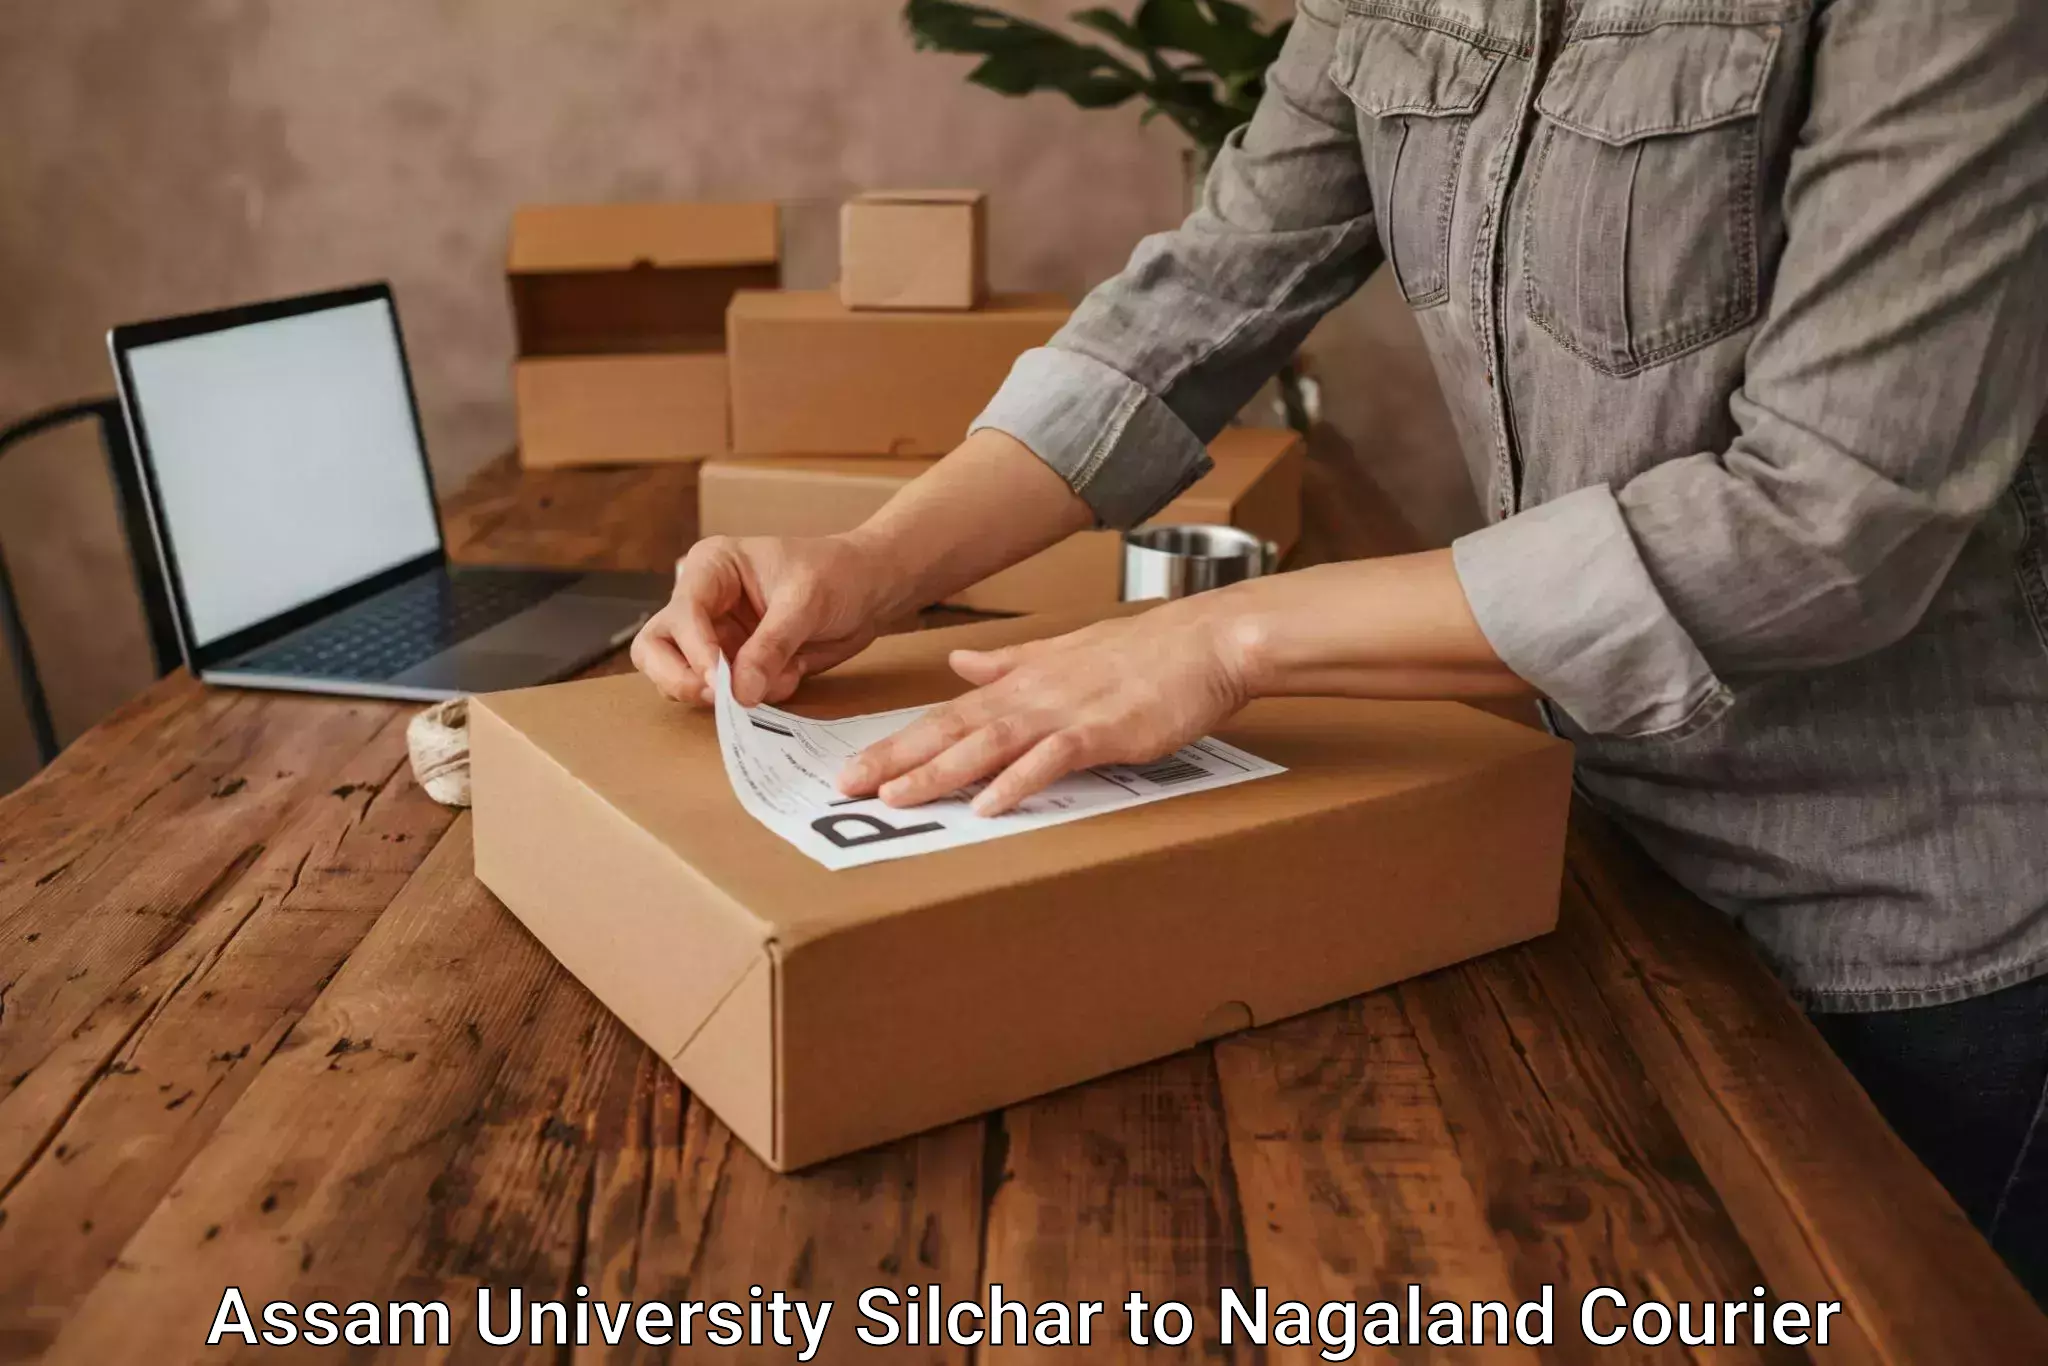 Door-to-door freight service Assam University Silchar to Mokokchung